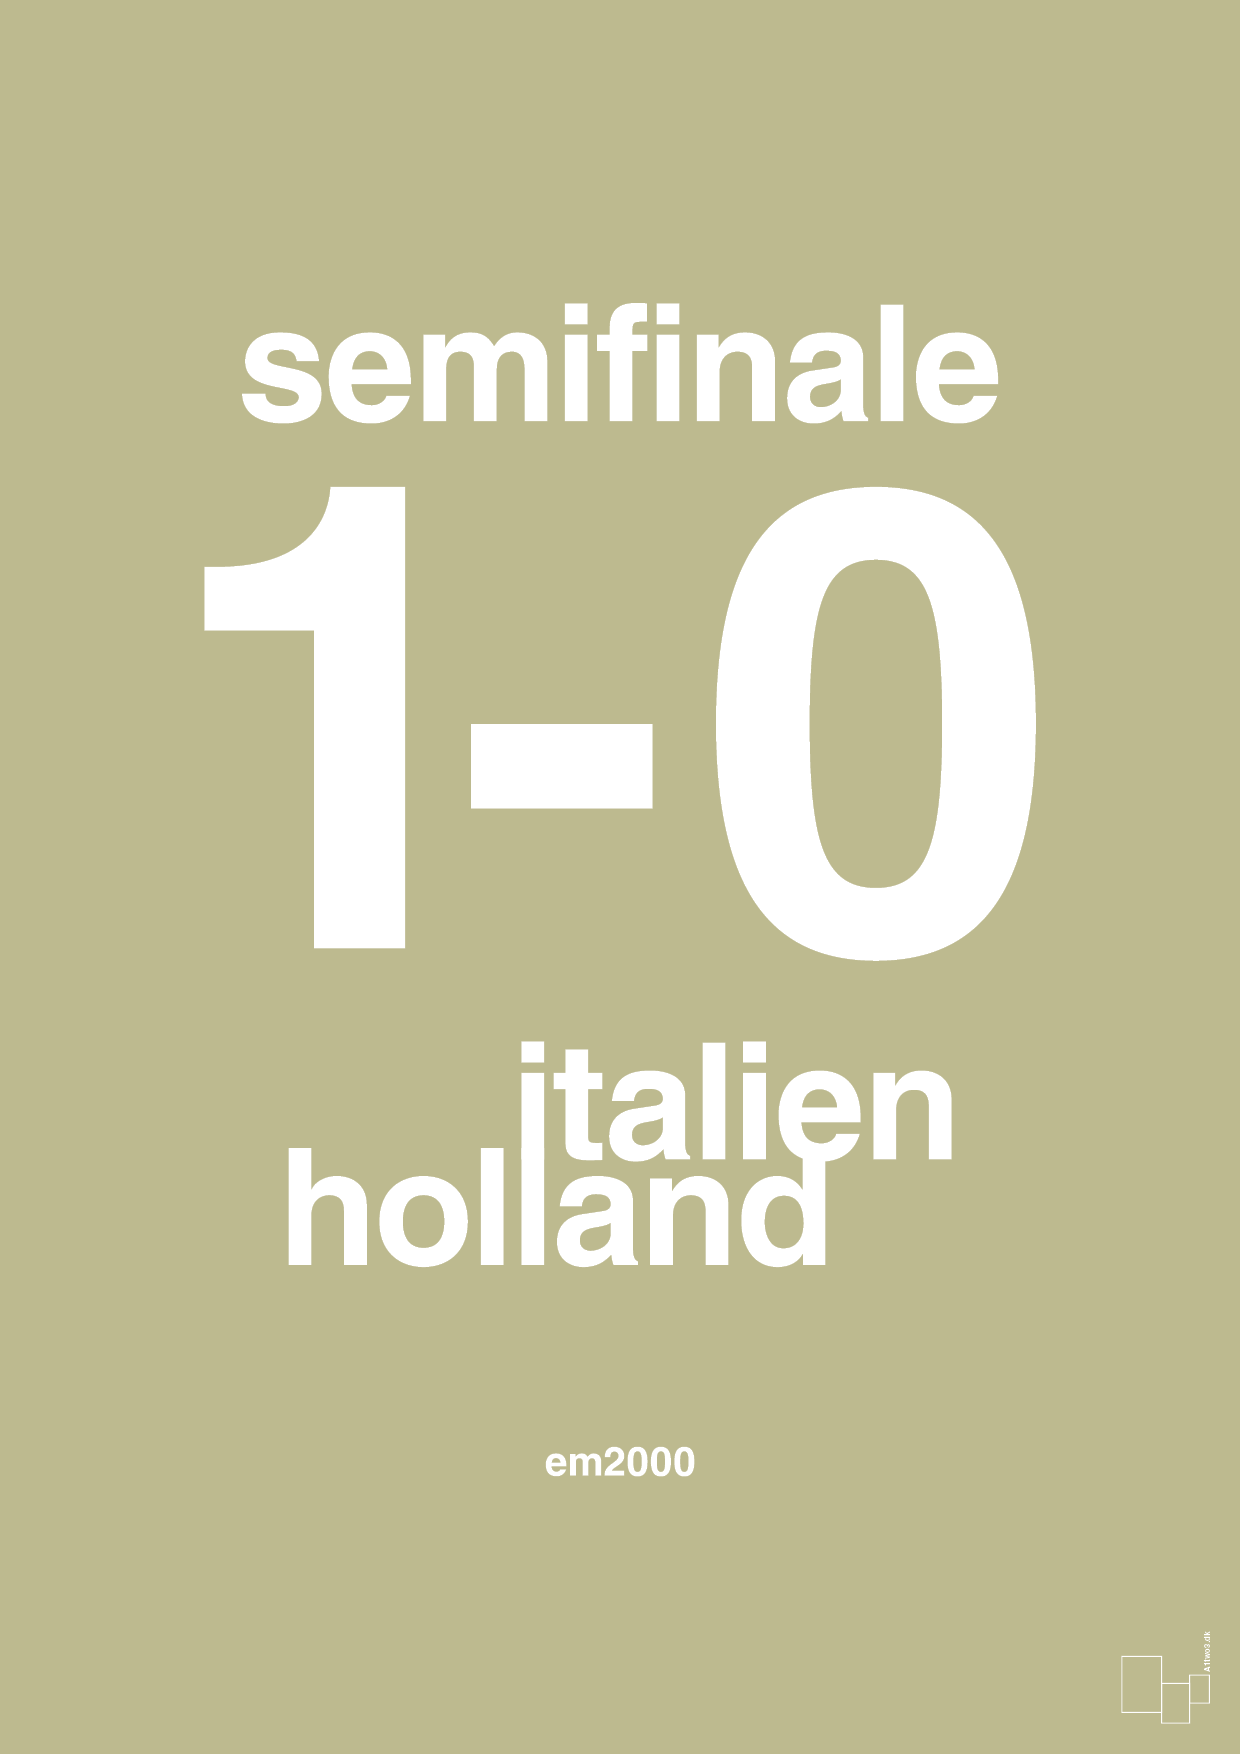 resultat for fodbold em semifinale A i 2000 - Plakat med Sport & Fritid i Back to Nature